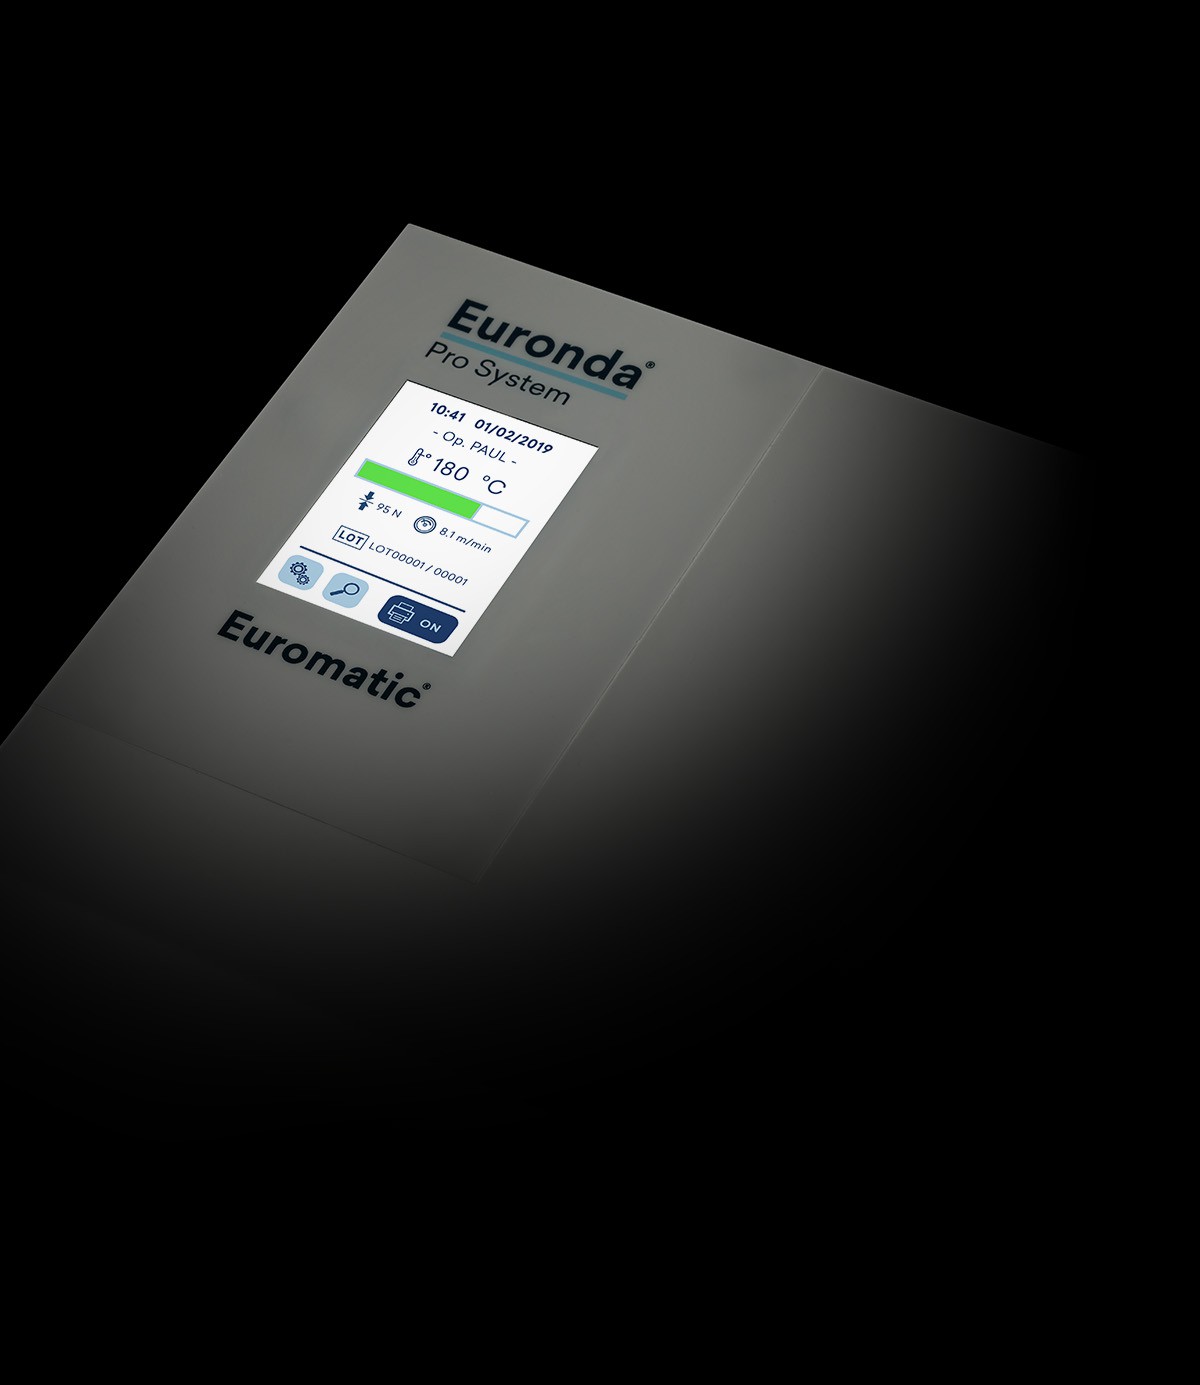 Запечатывающее устройство Euronda Euromatic - изображение 4